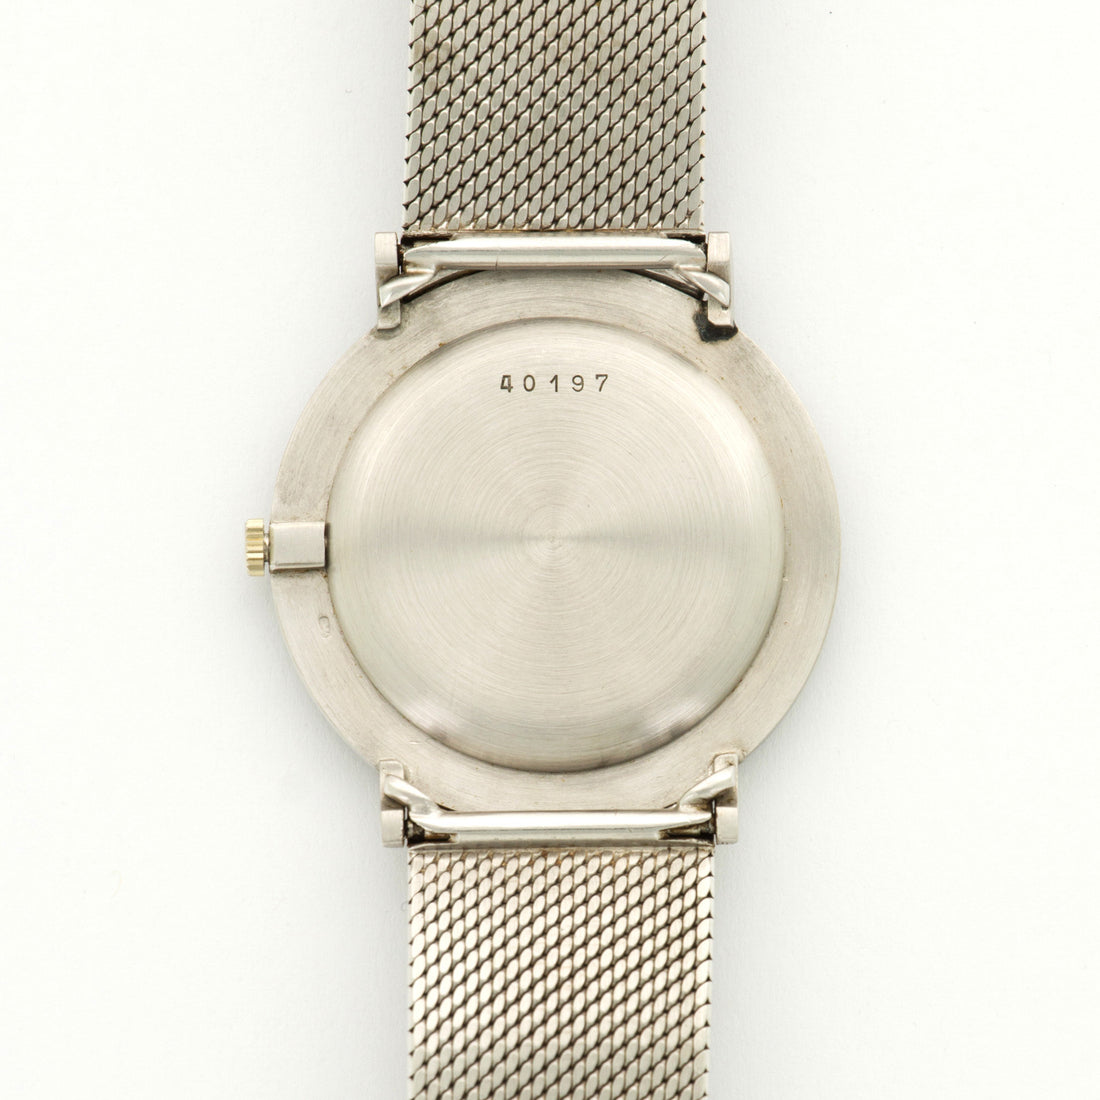 Audemars Piguet White Gold Ultra Thin Bracelet Watch